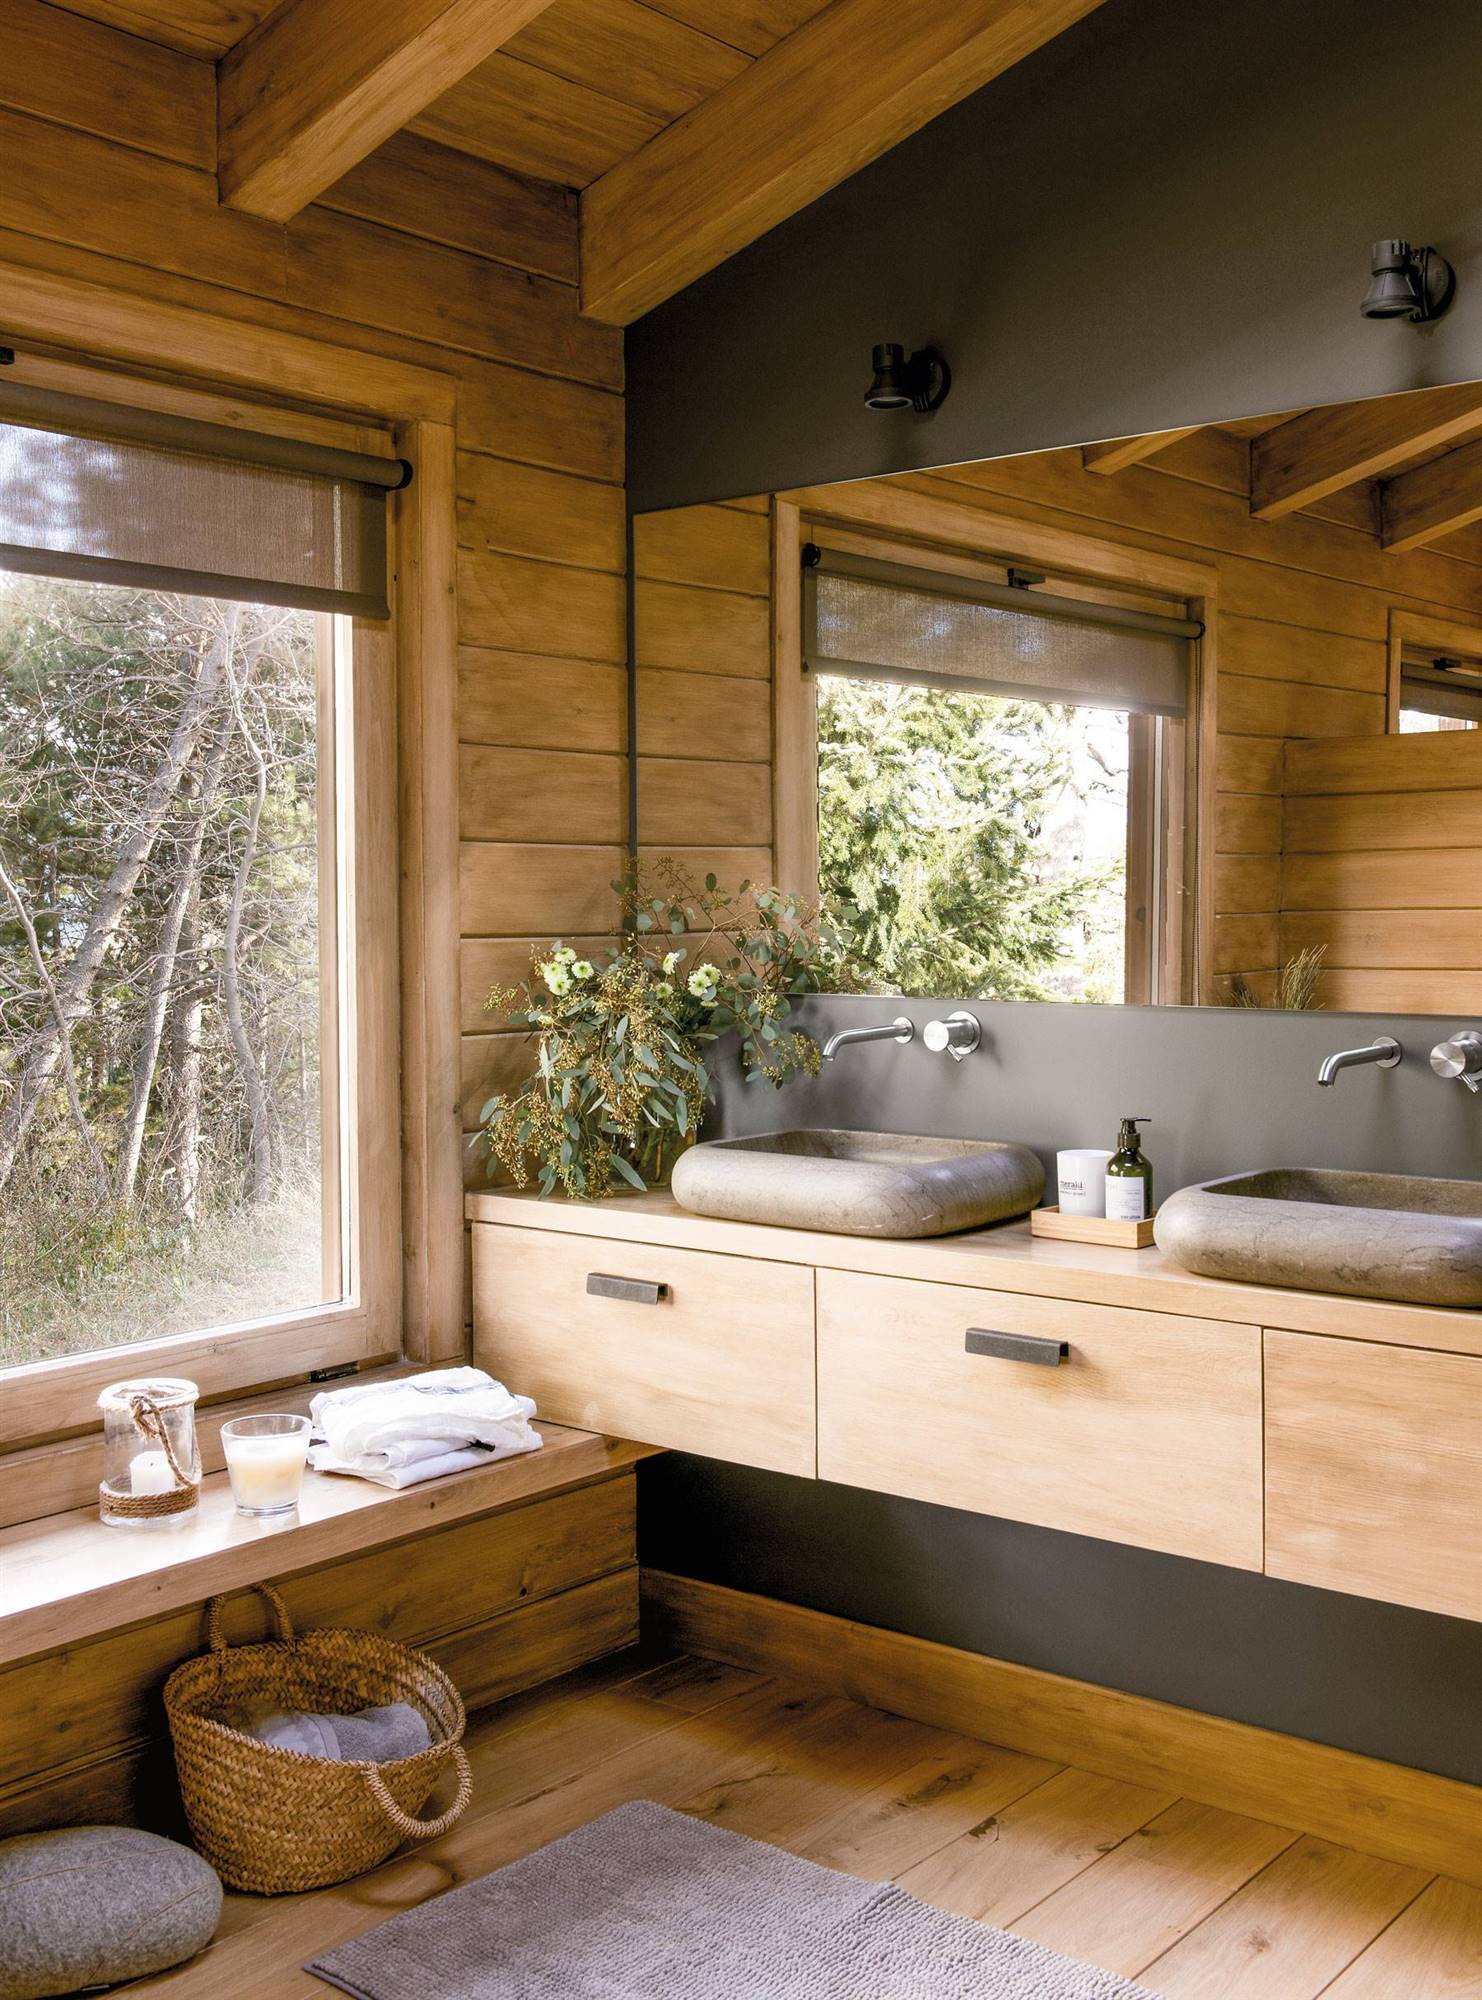 Baño rústico con muebles a medida en madera y microcemento. 